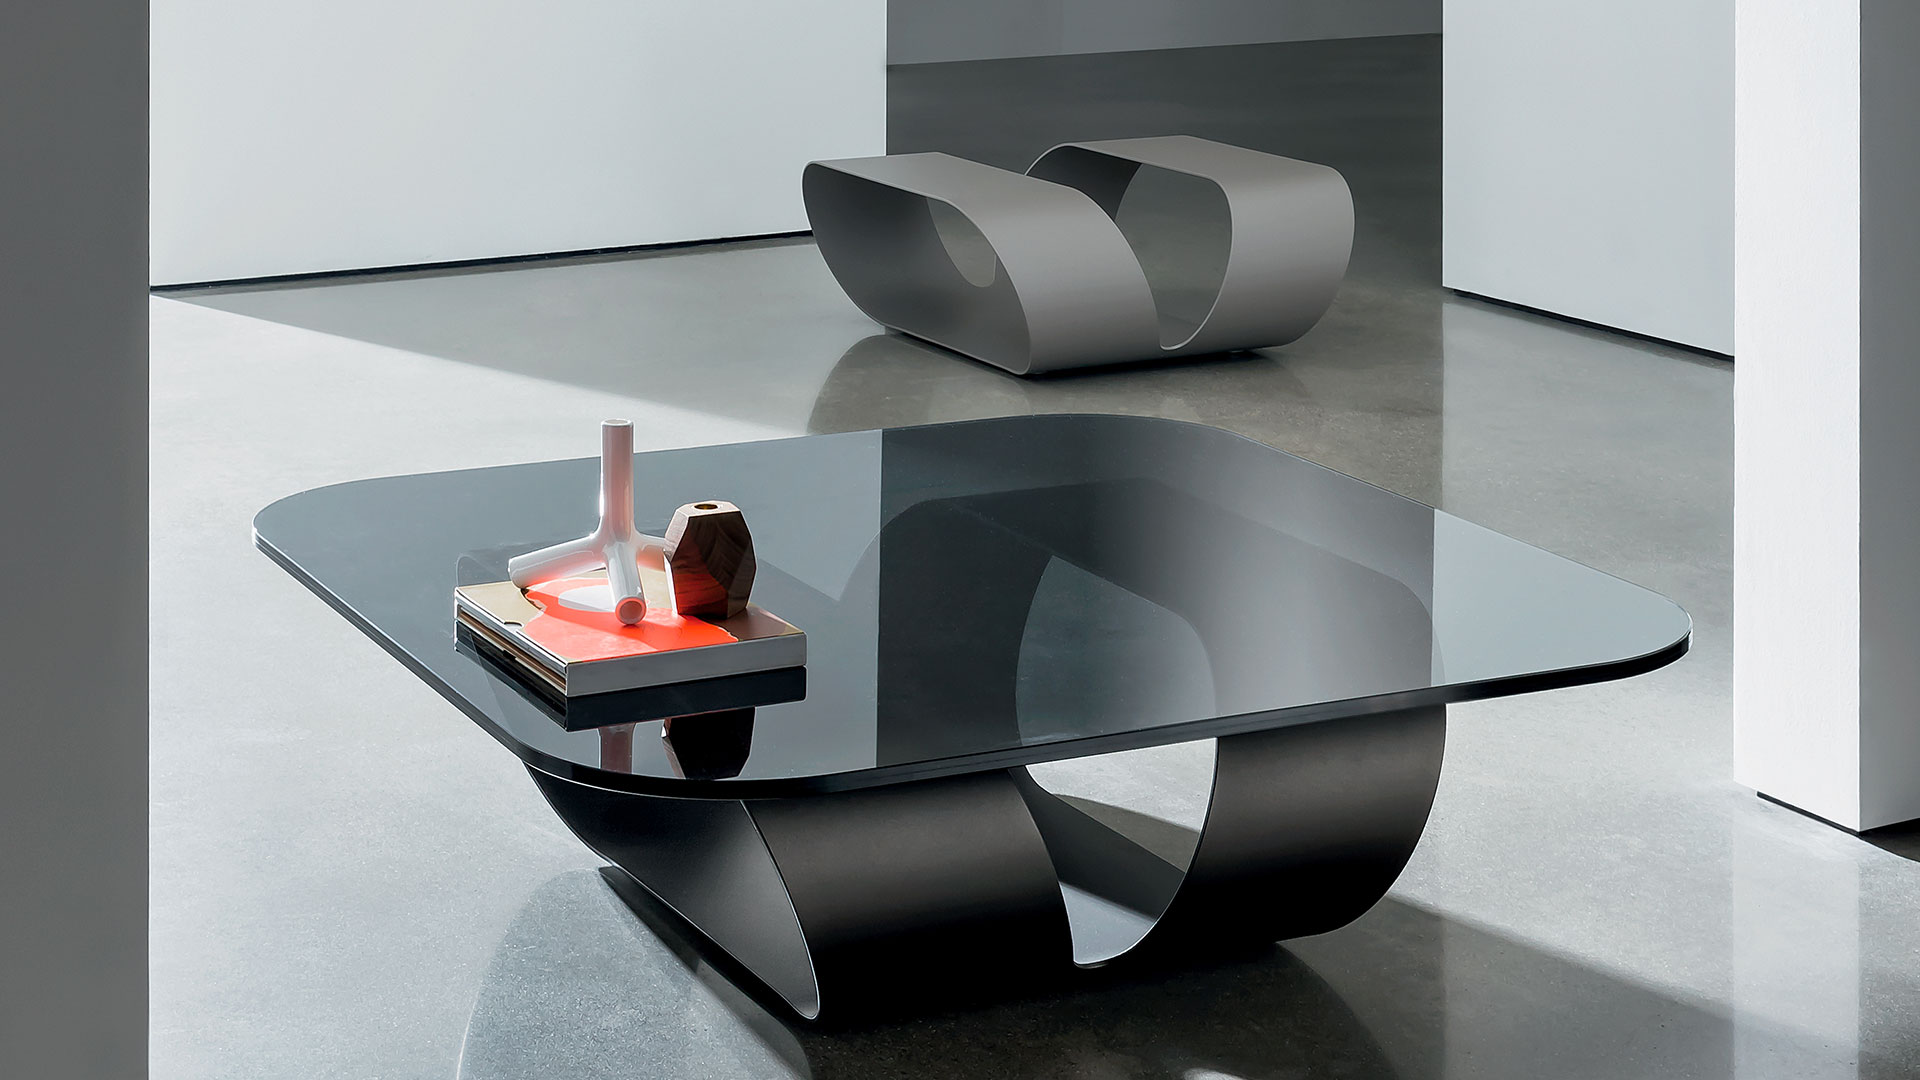 Tavolino in vetro sagomato quadrato con piano in vetro fumè e struttura composta da un'unica lastra di metallo curvata di colore grigio